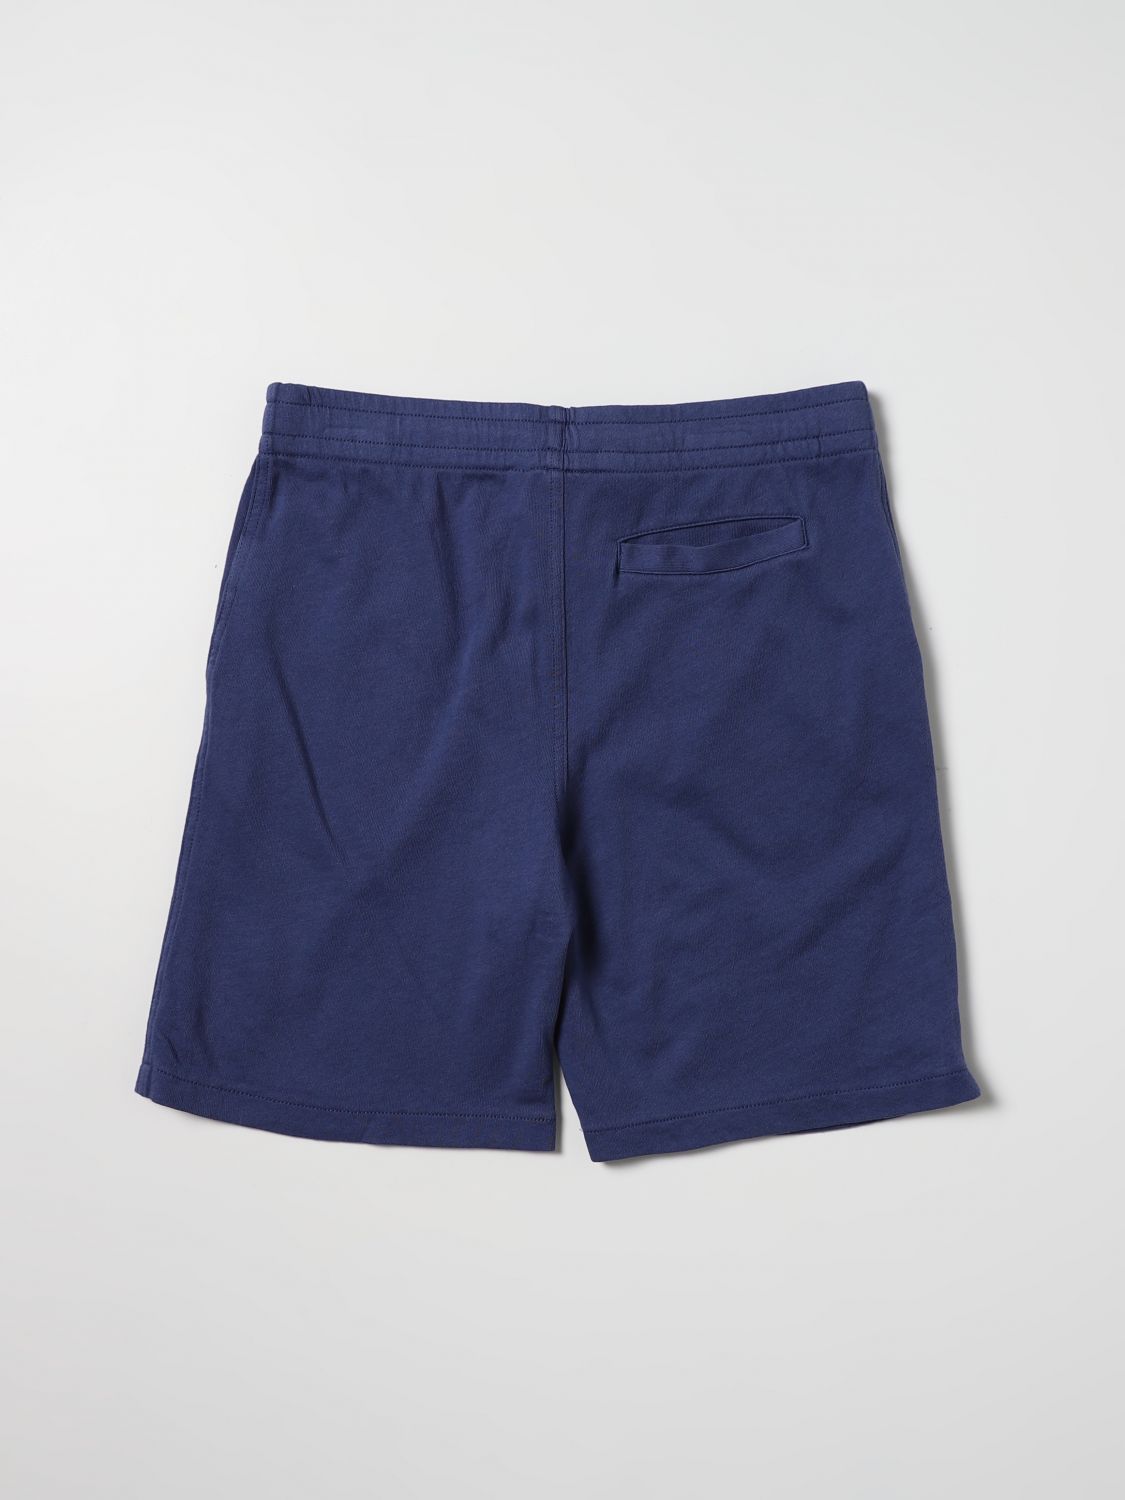 Pantalón corto Polo Ralph Lauren: Pantalón corto Polo Ralph Lauren para niño azul oscuro 2